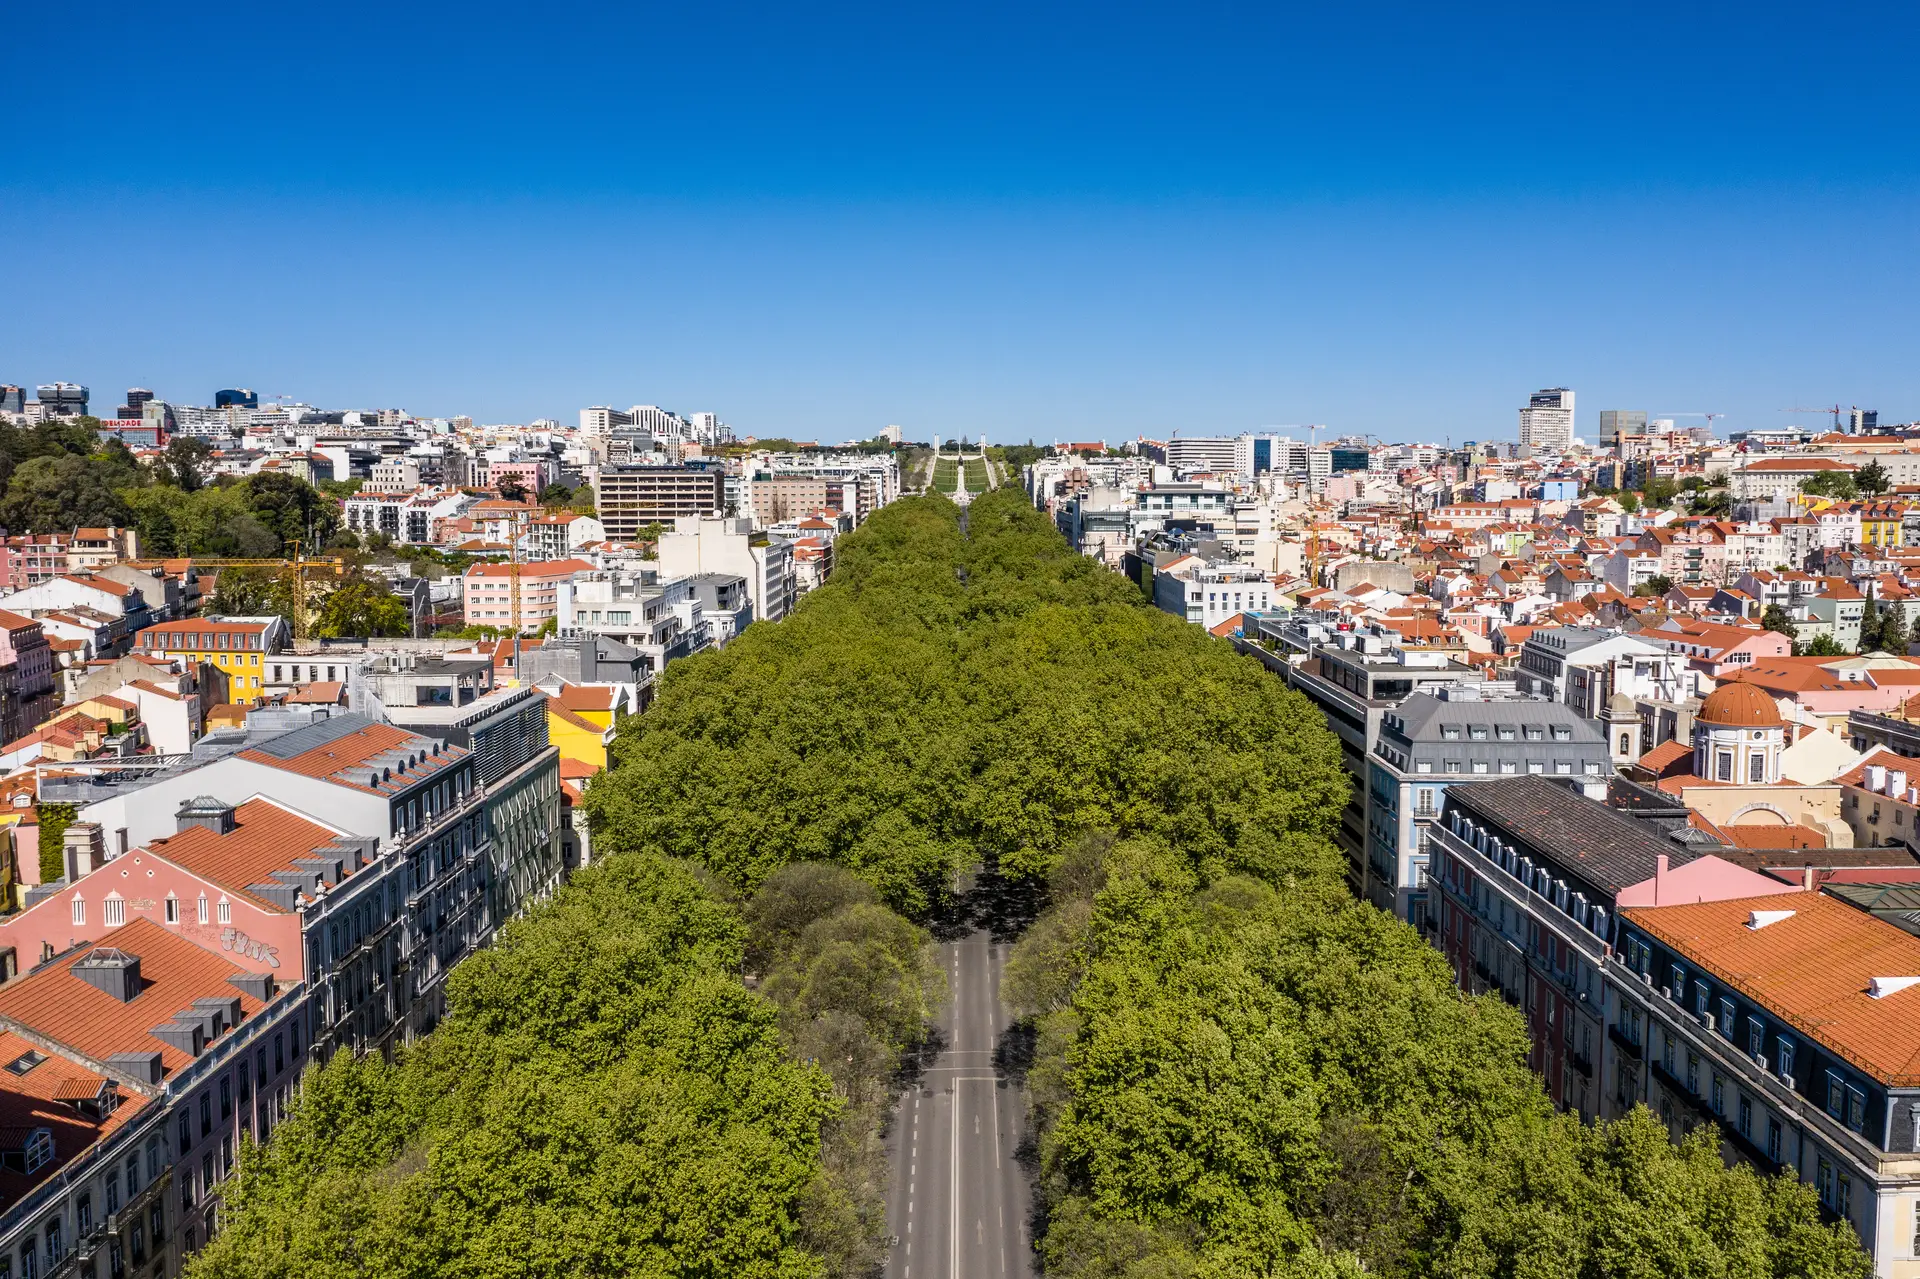 Poluição do ar na Av. da Liberdade em Lisboa “12,5% acima” do limite legal durante 2022, denuncia ZERO